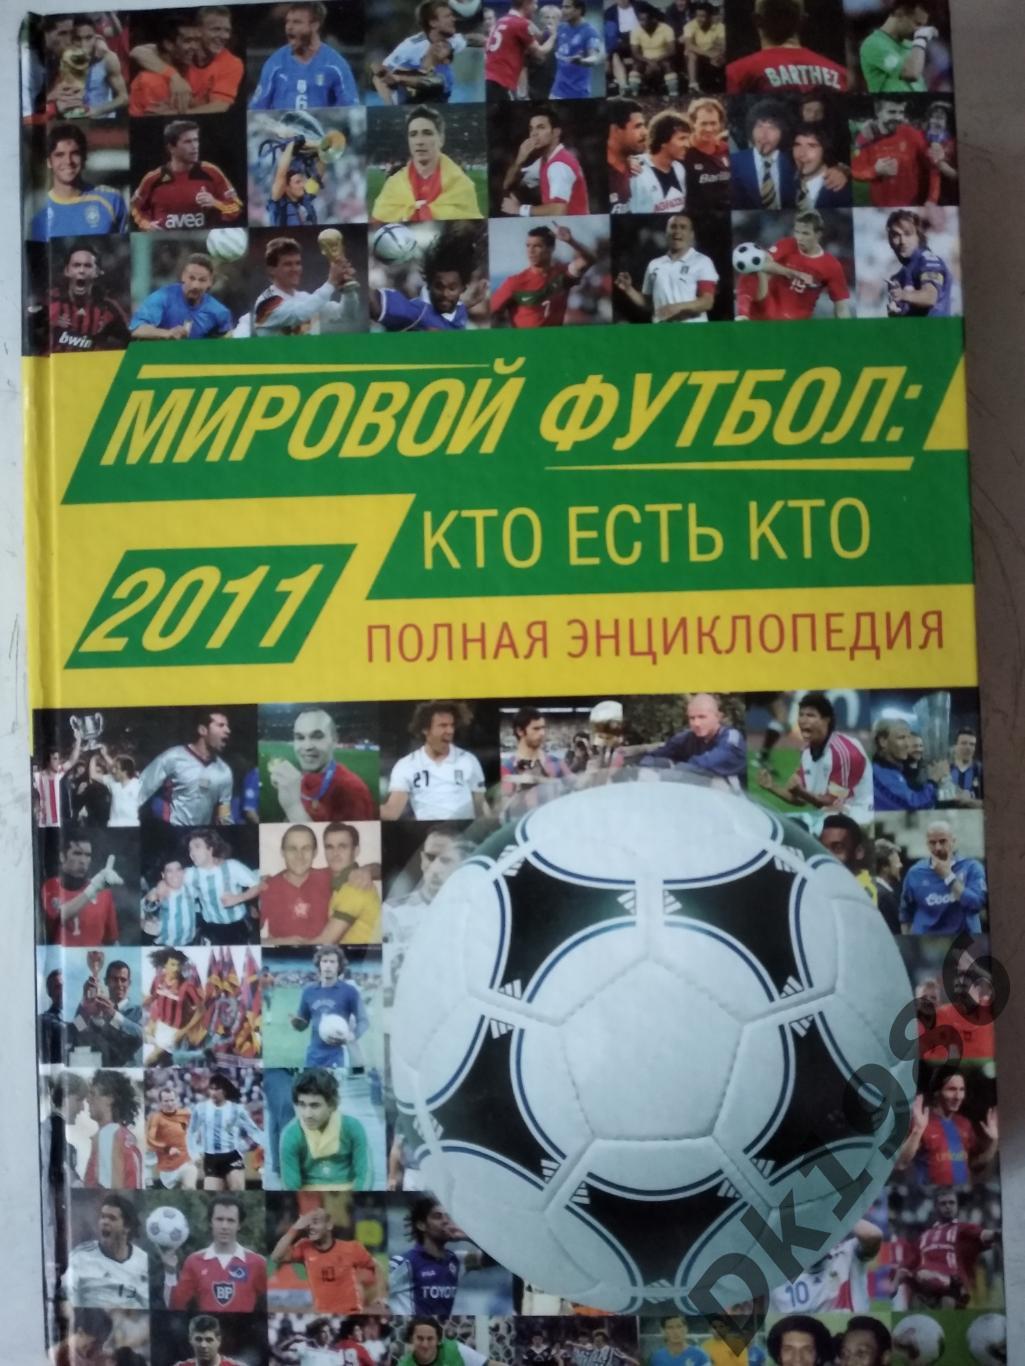 Енциклопедія Світовий футбол (хто є хто) 2011 рік